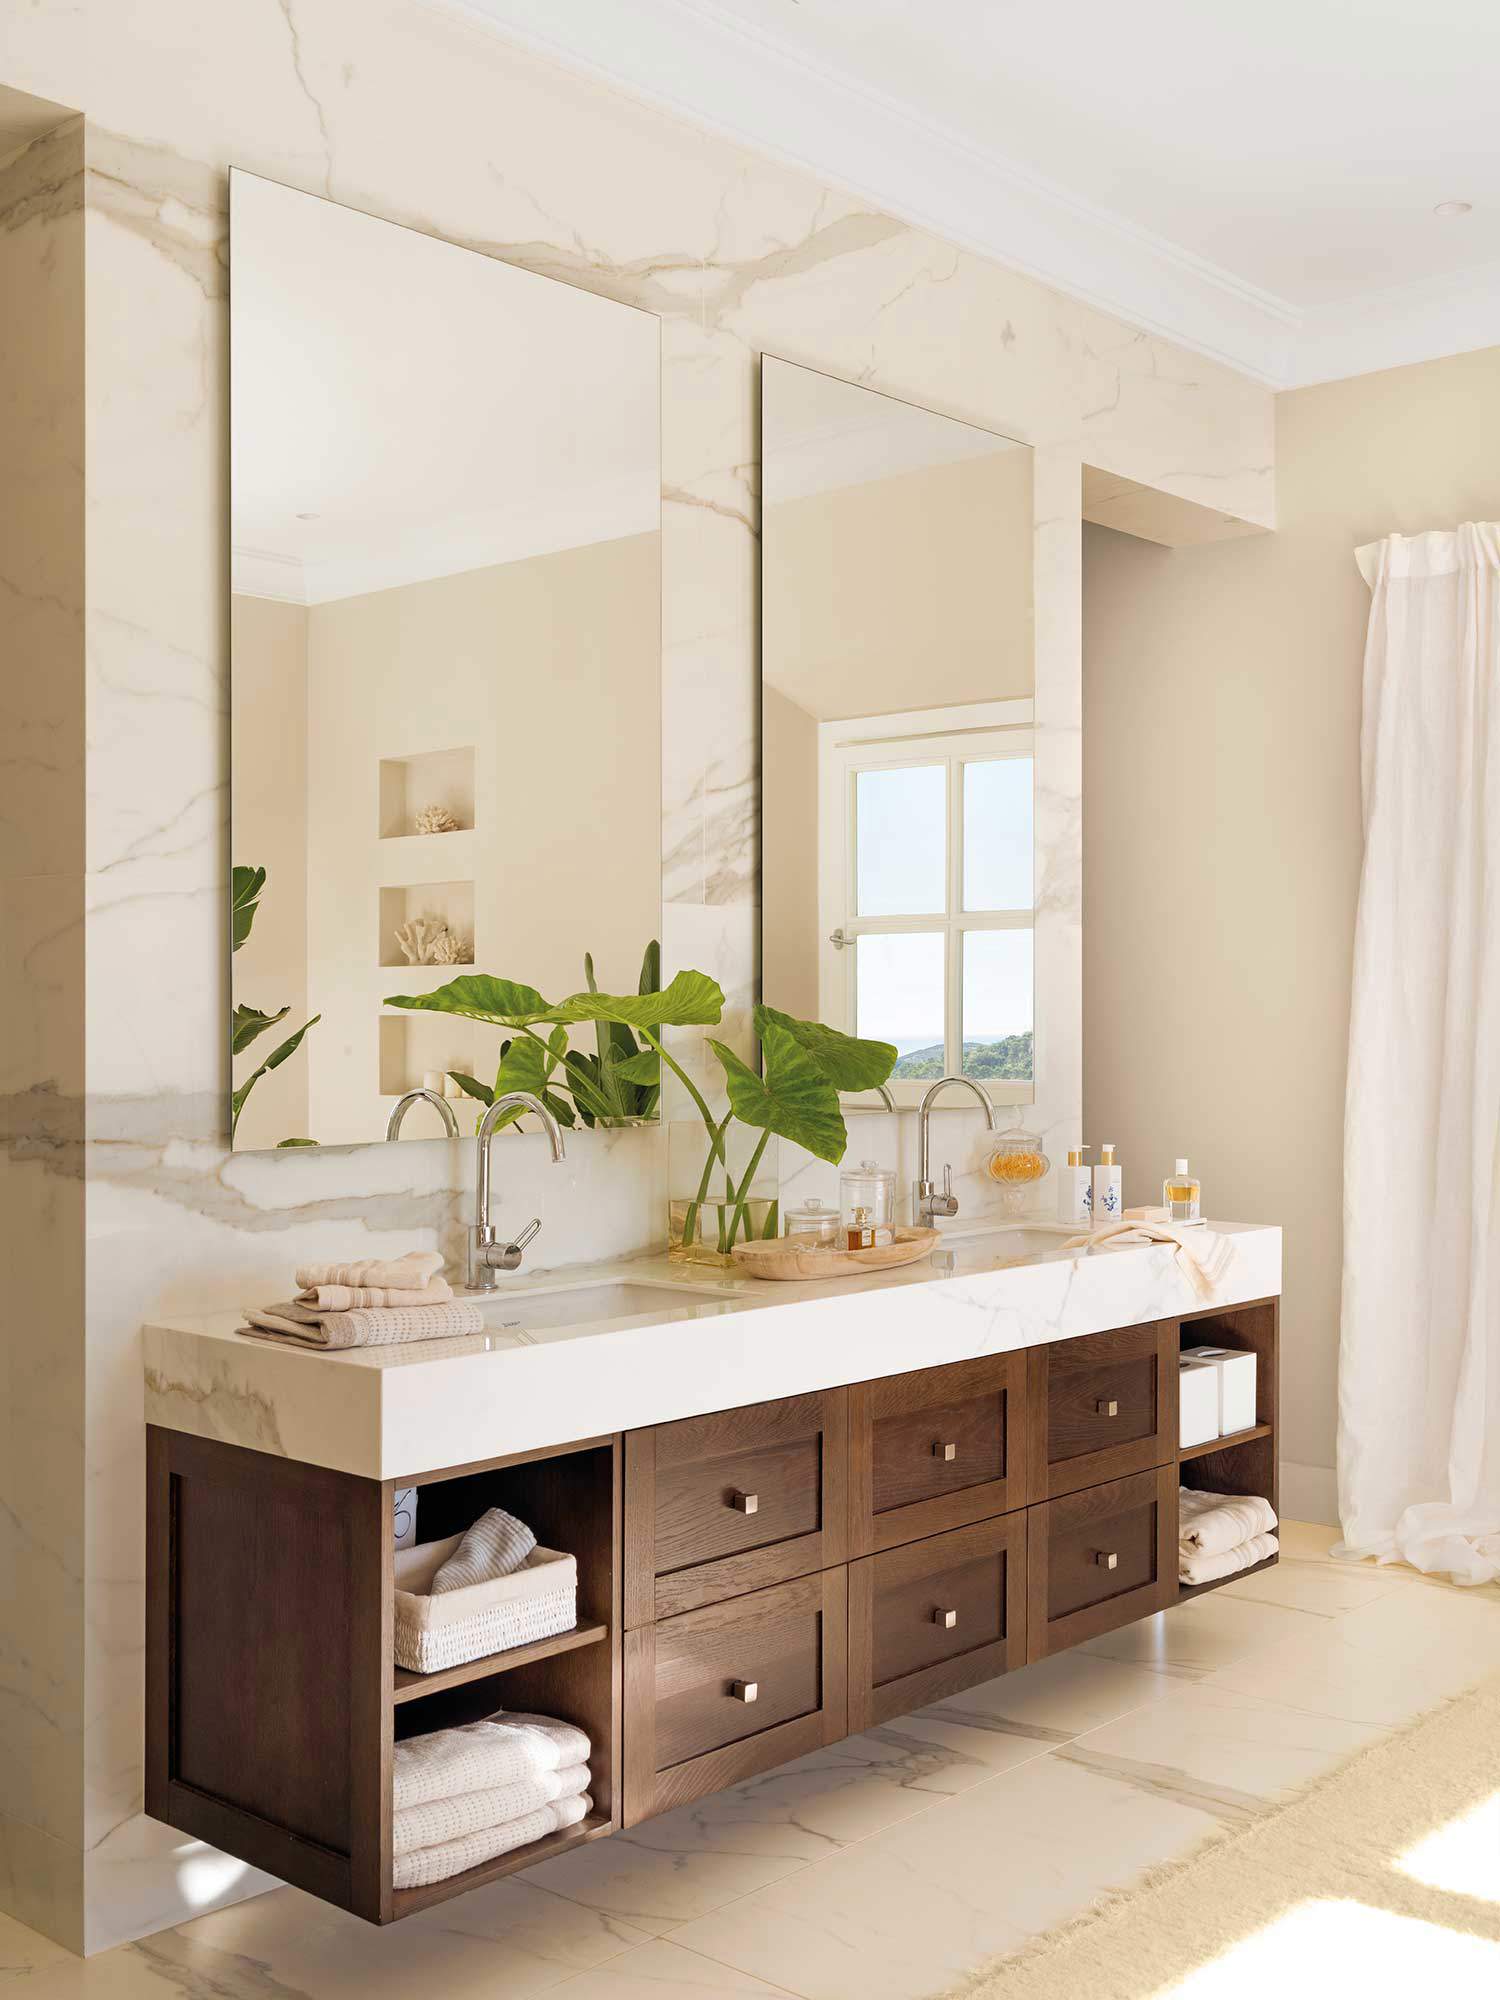 Baño con mueble de lavabo de madera con cajones y estantes.